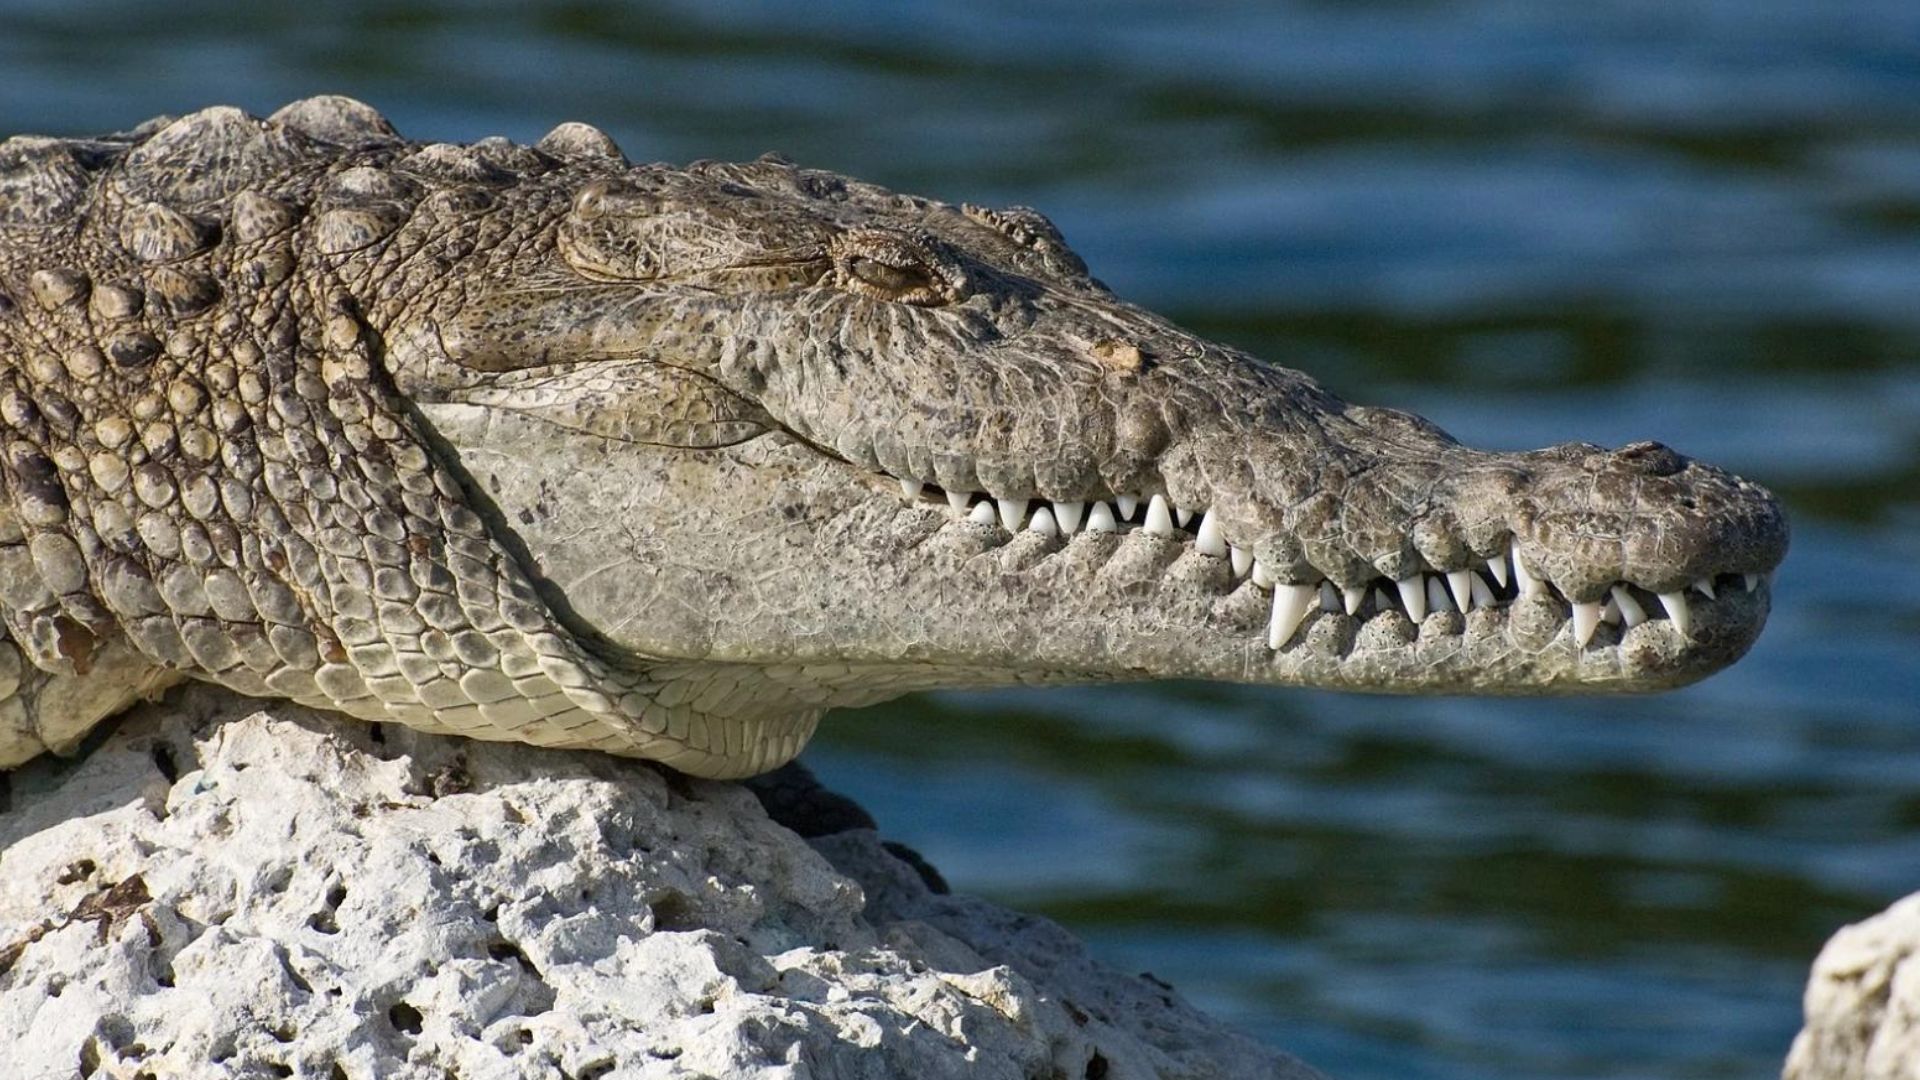 Criança nada em águas com crocodilos e desaparece na Austrália